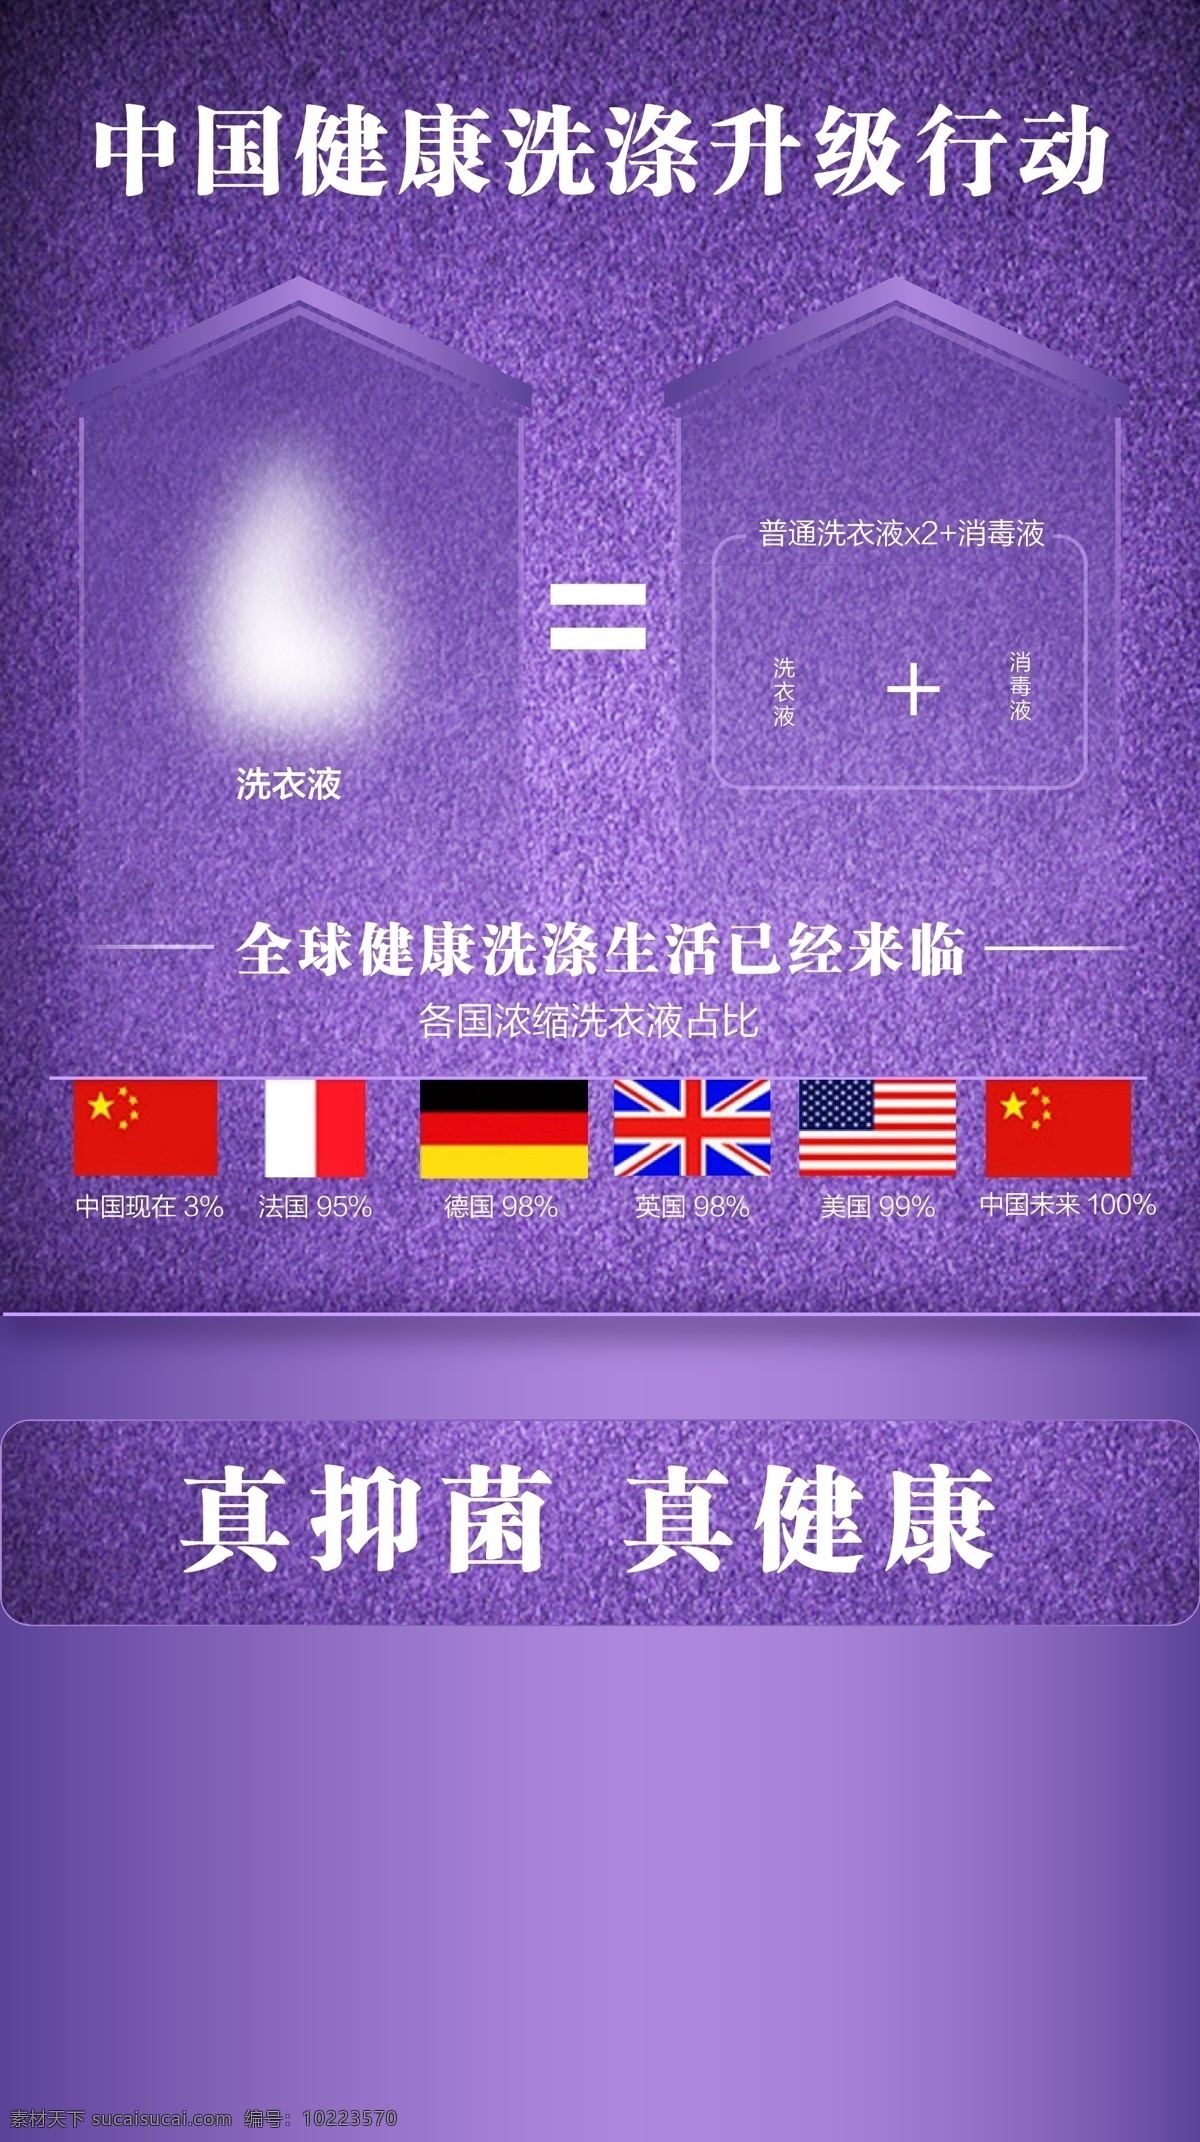 浓缩 洗衣液 微 信 海报 宣传 国旗 紫色背景 梦幻 微商